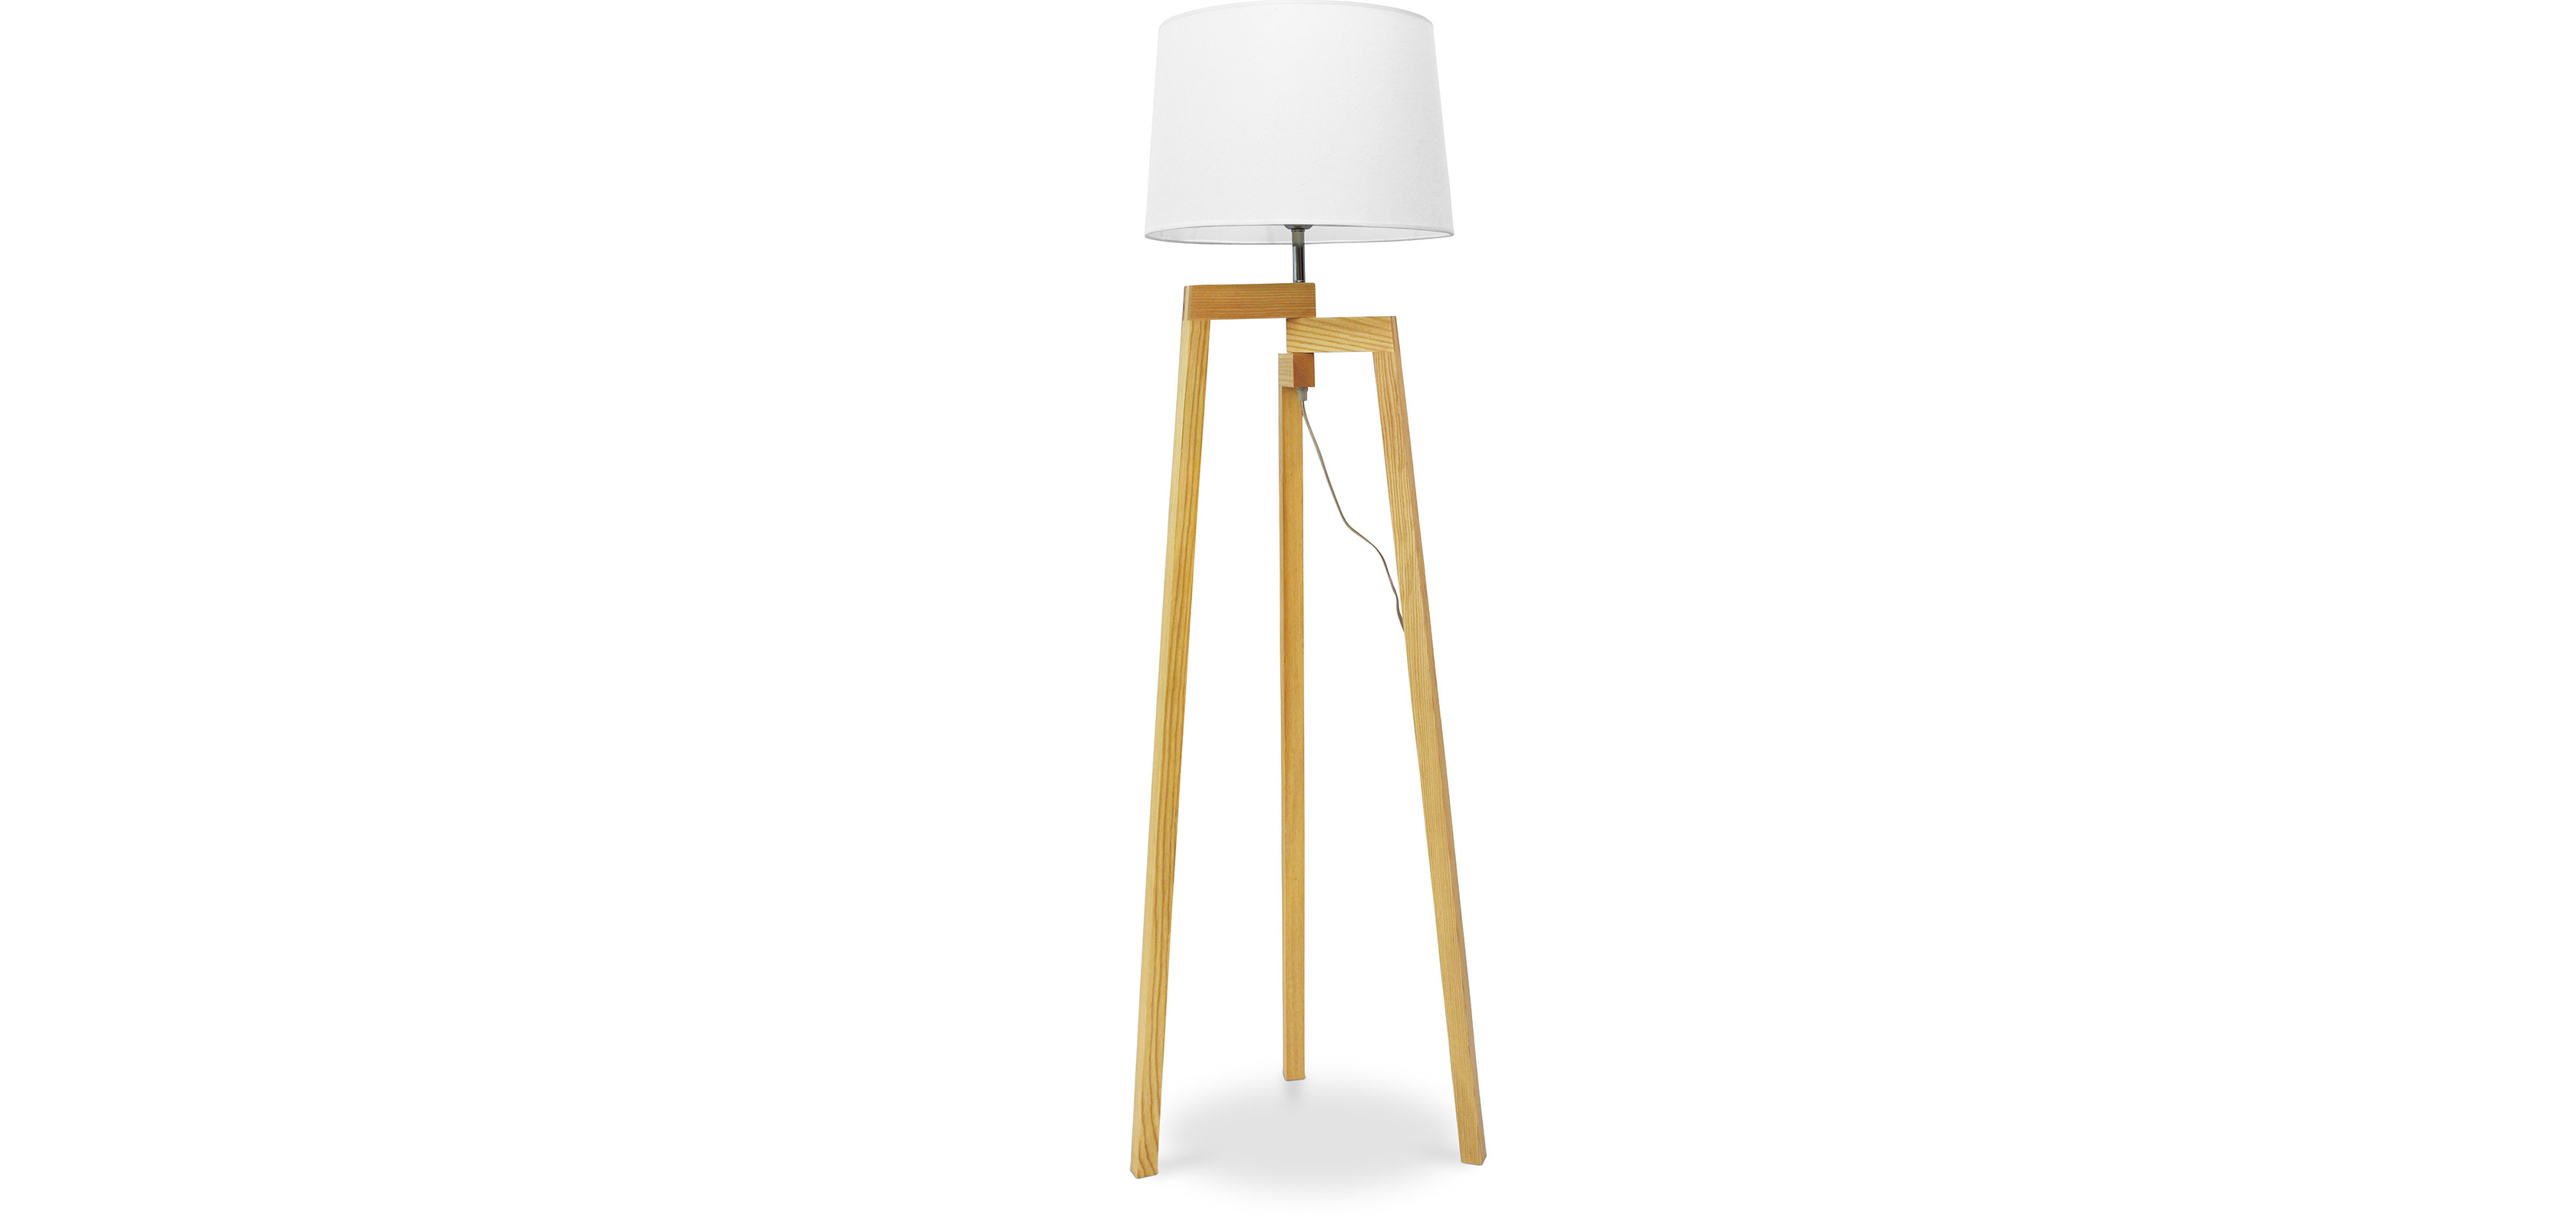 Stehlampe Dreibein skandinavischen im - Design - Wohnzimmerlampe Lon